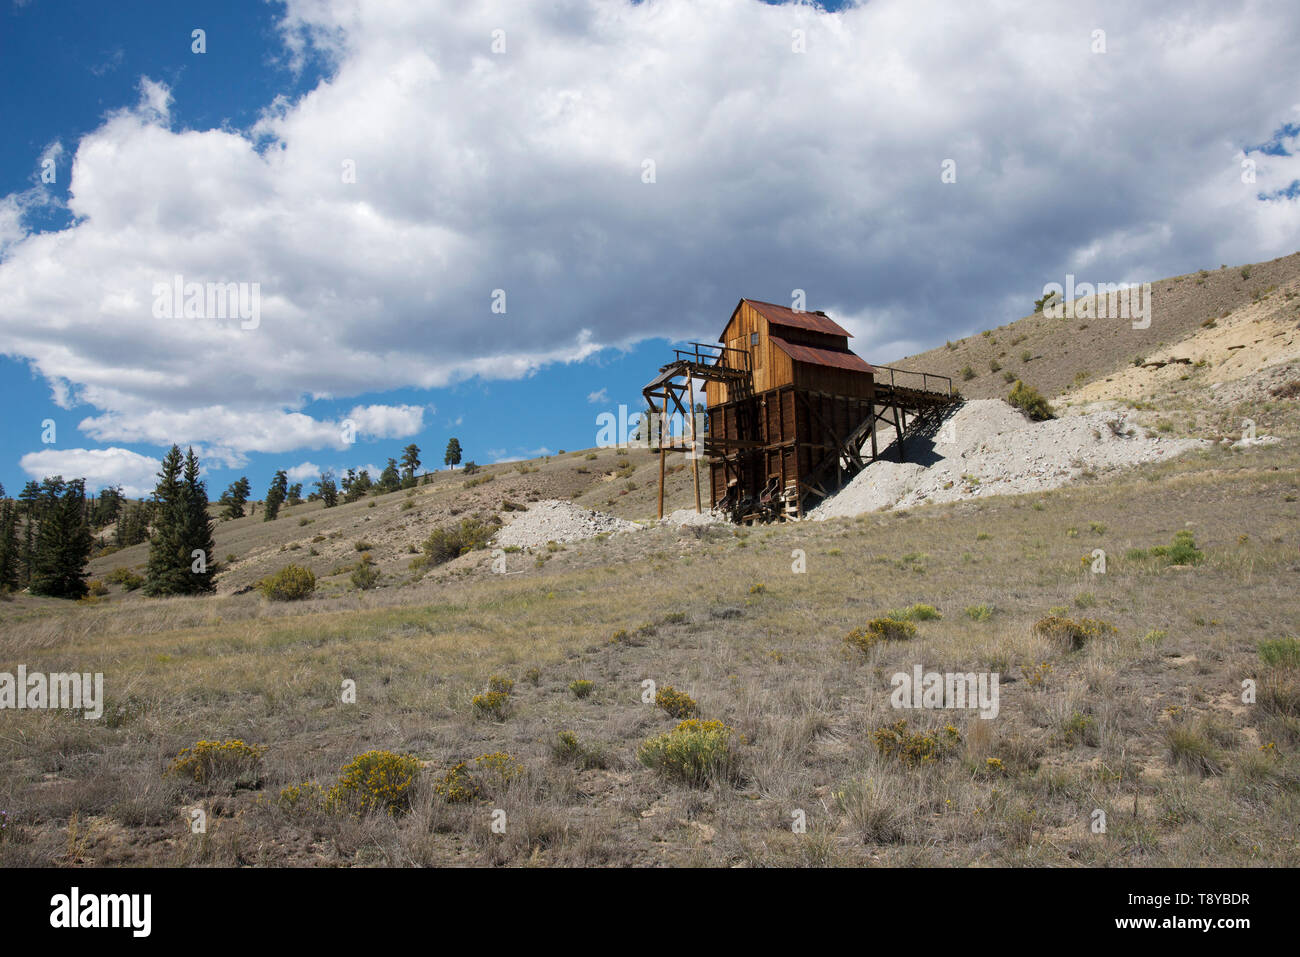 L'argile historique Mine, qui extrait l'argile bentonite utilisés en 1939-45 de munitions et d'autres produits, Creede (Colorado). Photographie numérique Banque D'Images